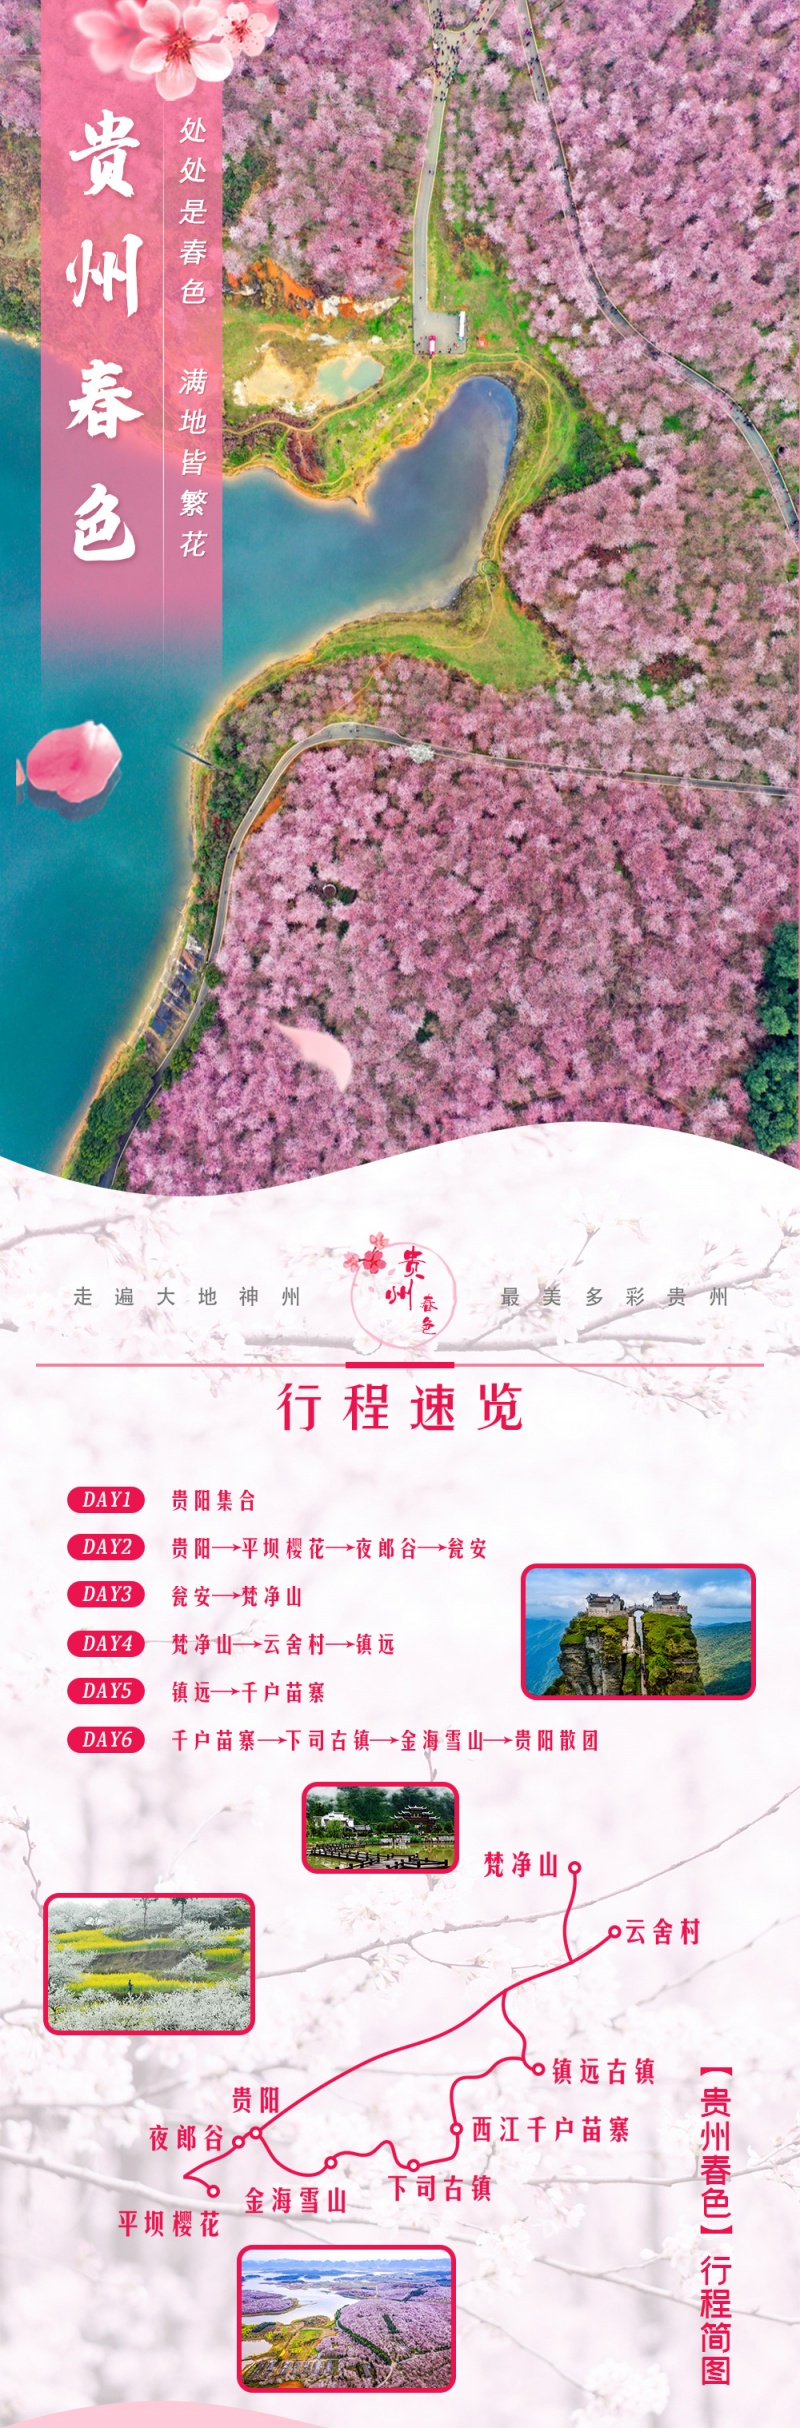 贵州春色亮点图2022-1